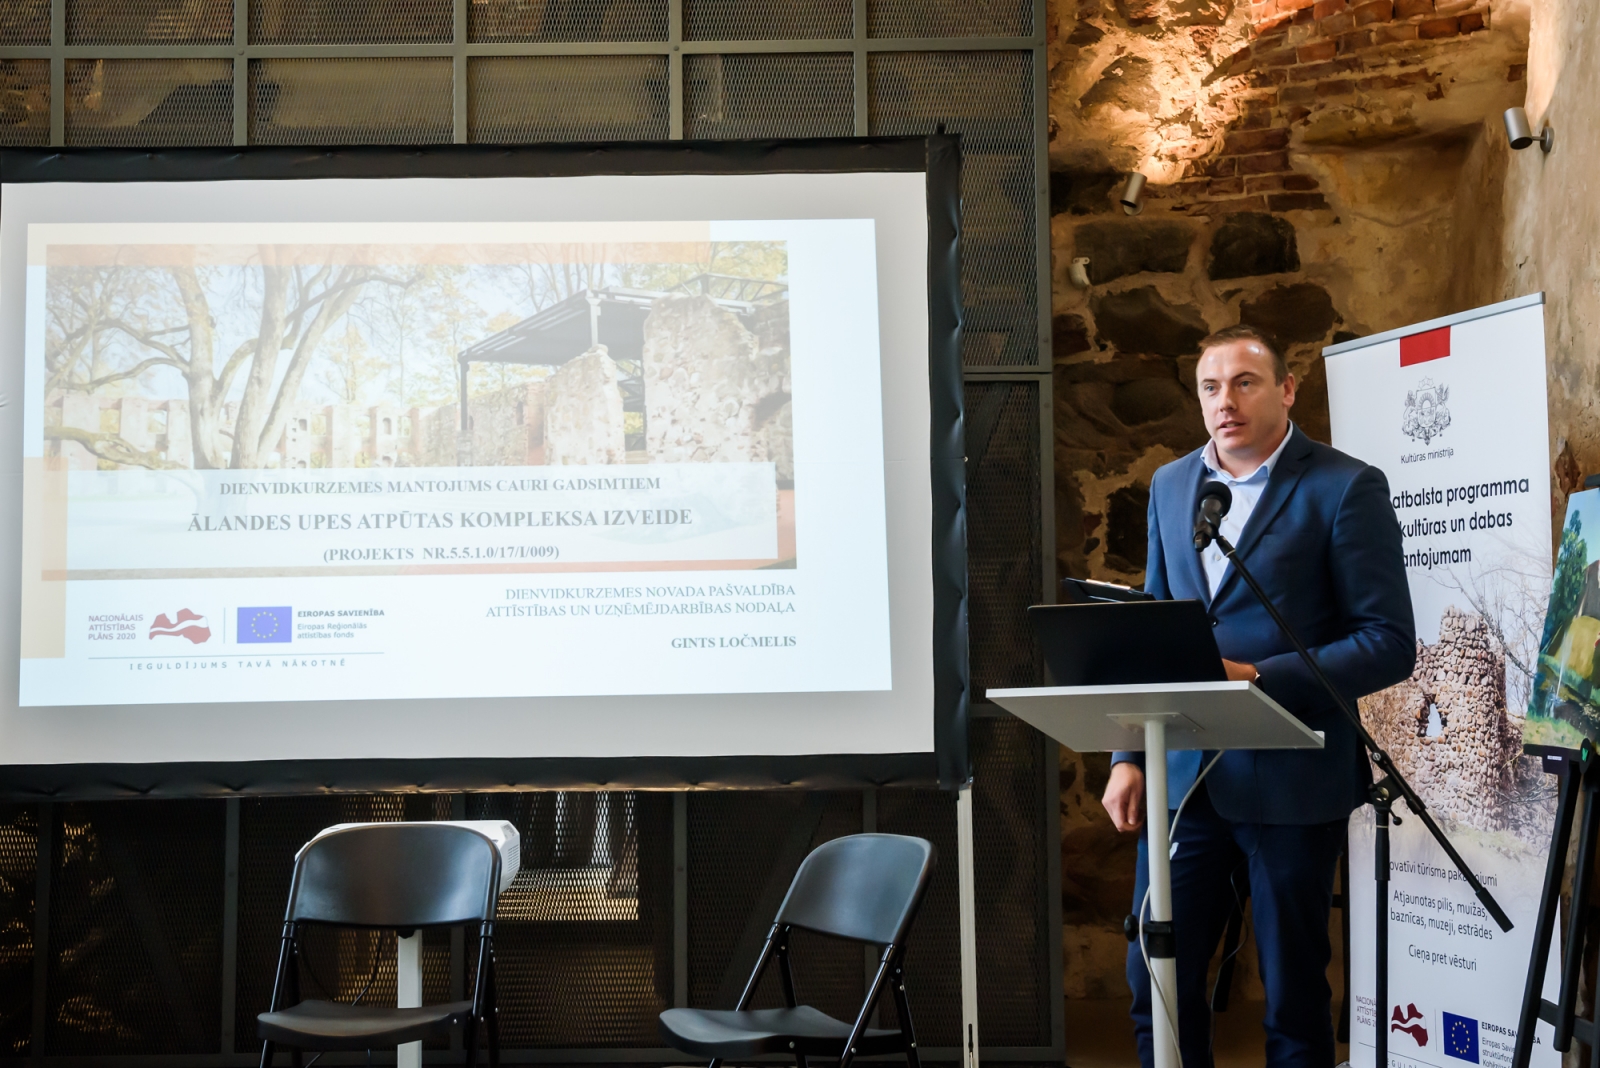 Konference "Atrastā Latvija - 60 kultūras un dabas mantojuma veiksmes stāsti"